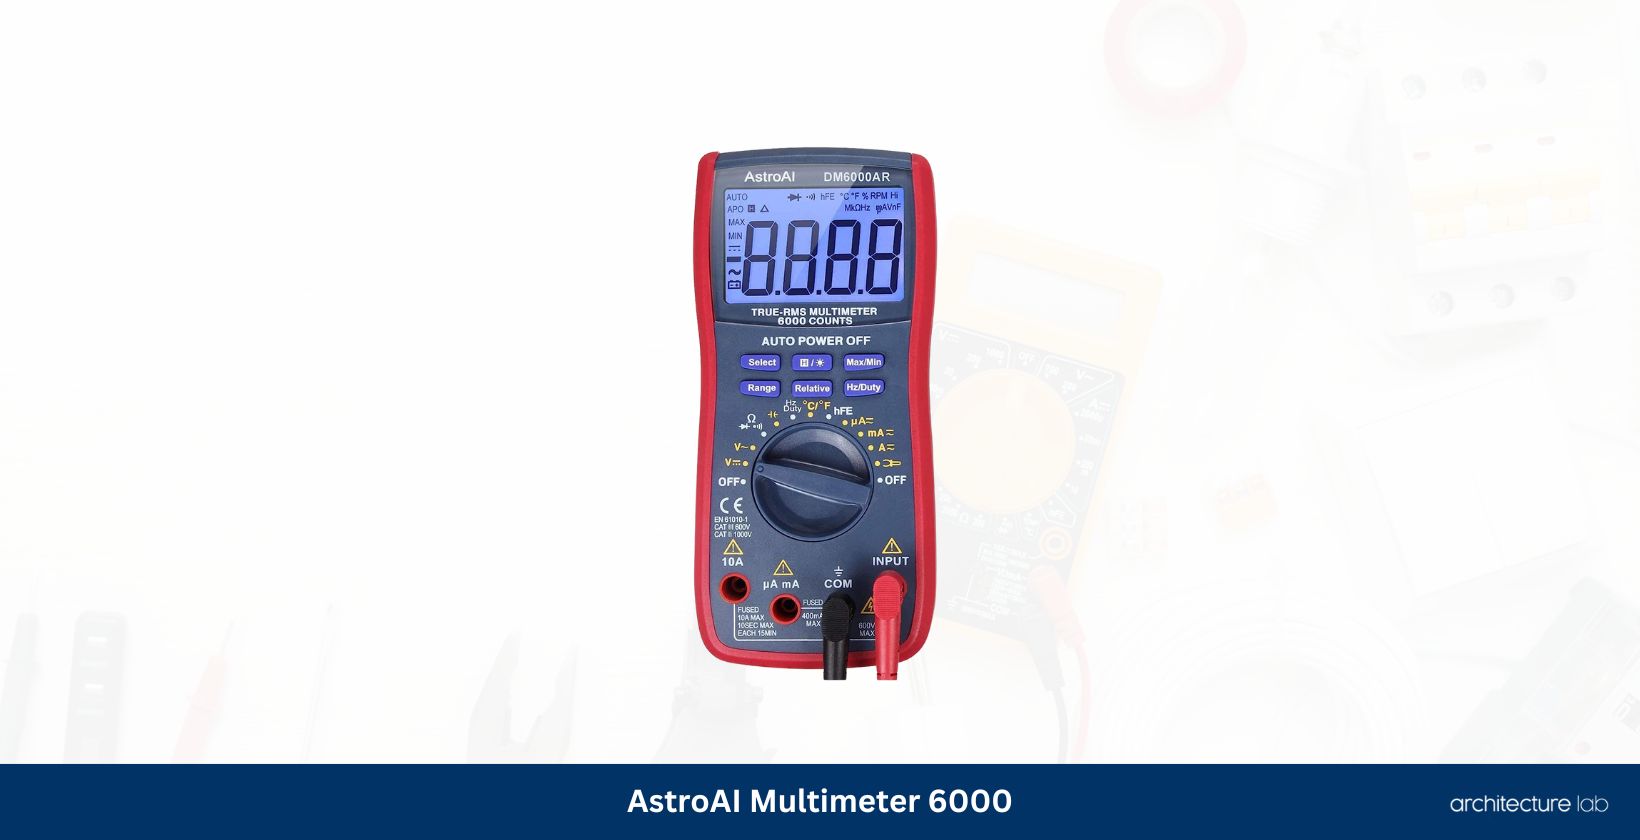 Astroai multimeter 6000